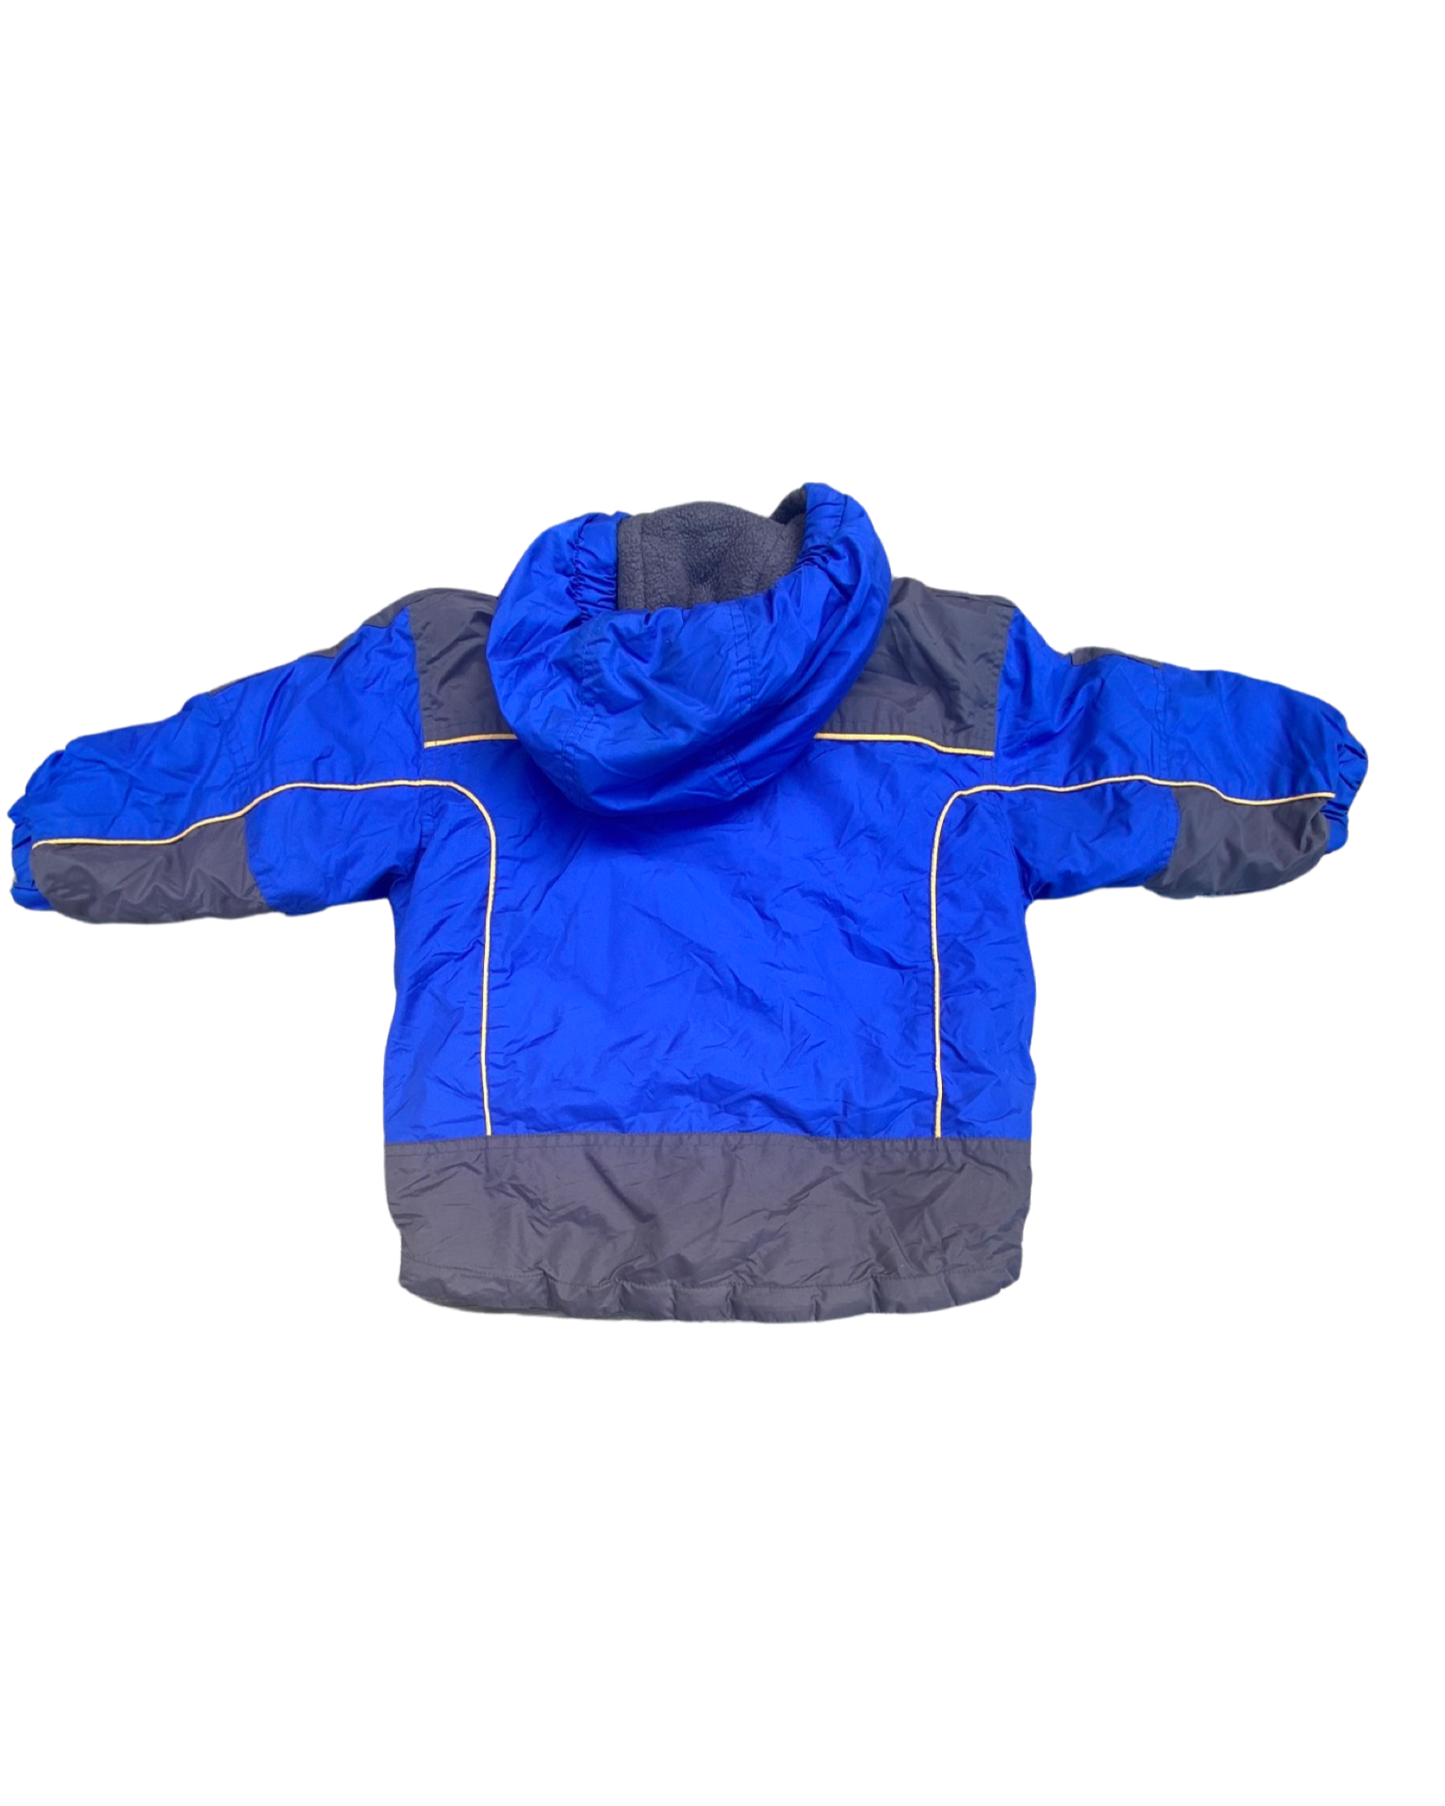 Osh Kosh vintage ski jacket (size 2-3yrs)